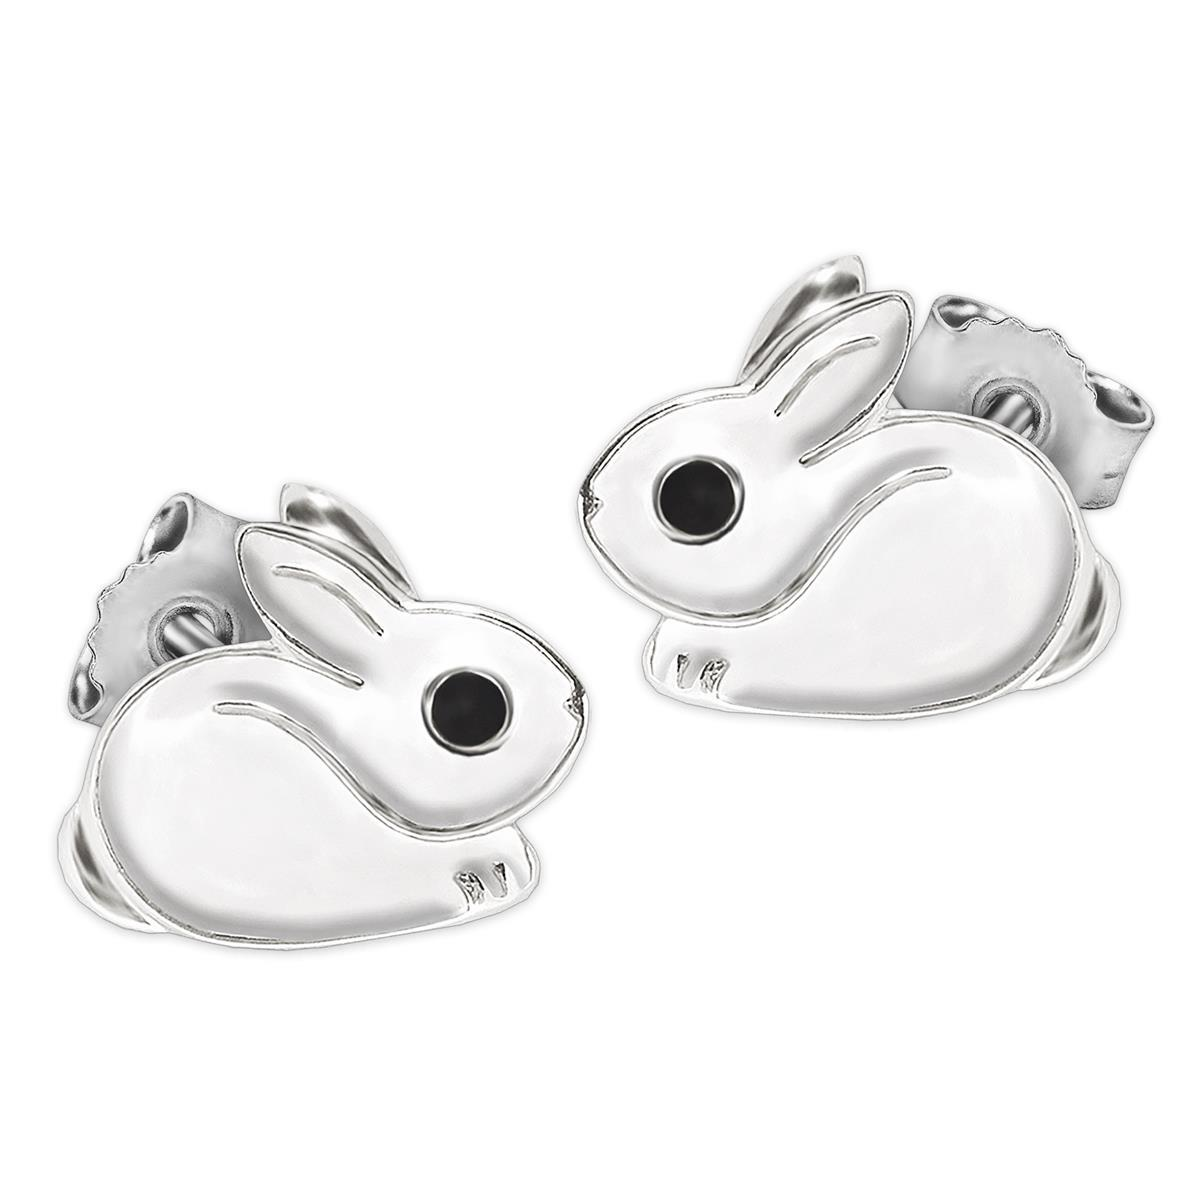 Silberne kleine Kinderohrringe als Stecker Mini Hase 6 mm hockend Fell weiß und Auge schwarz lackiert glänzend Echt Silber 925